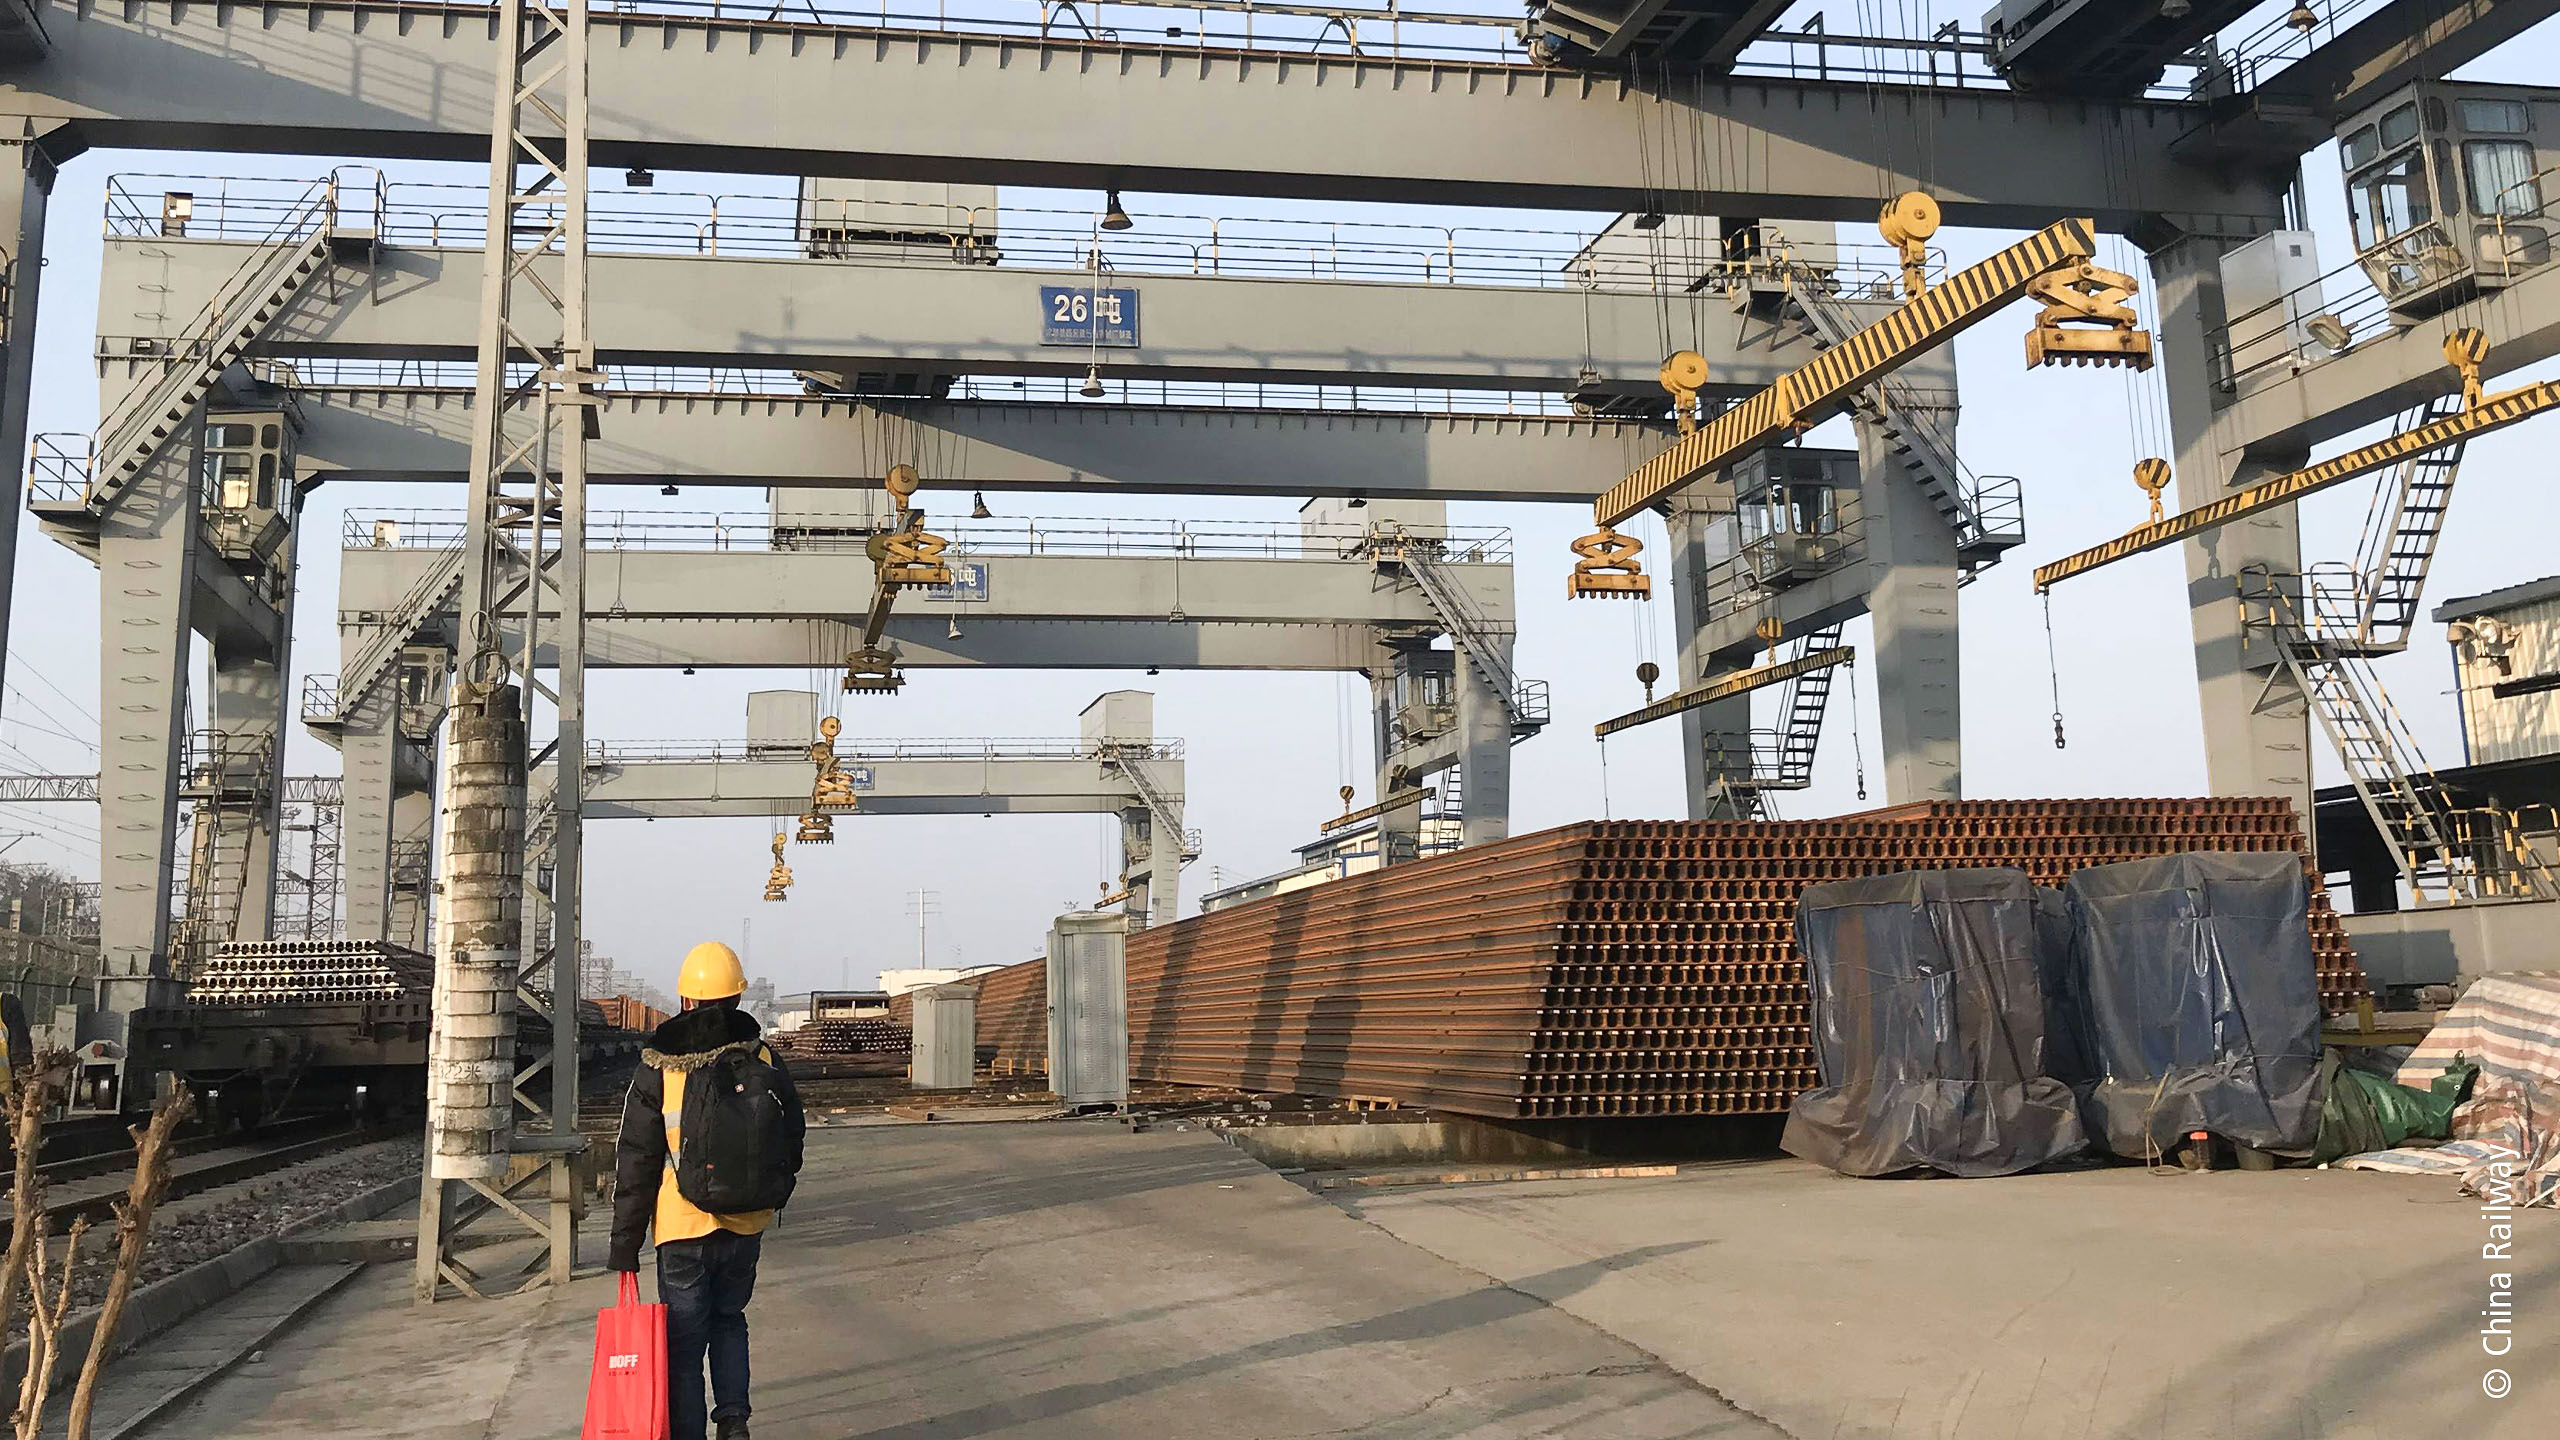 中国铁路总公司的串联式起重机吊装系统正在运送 100 米的铁轨。 